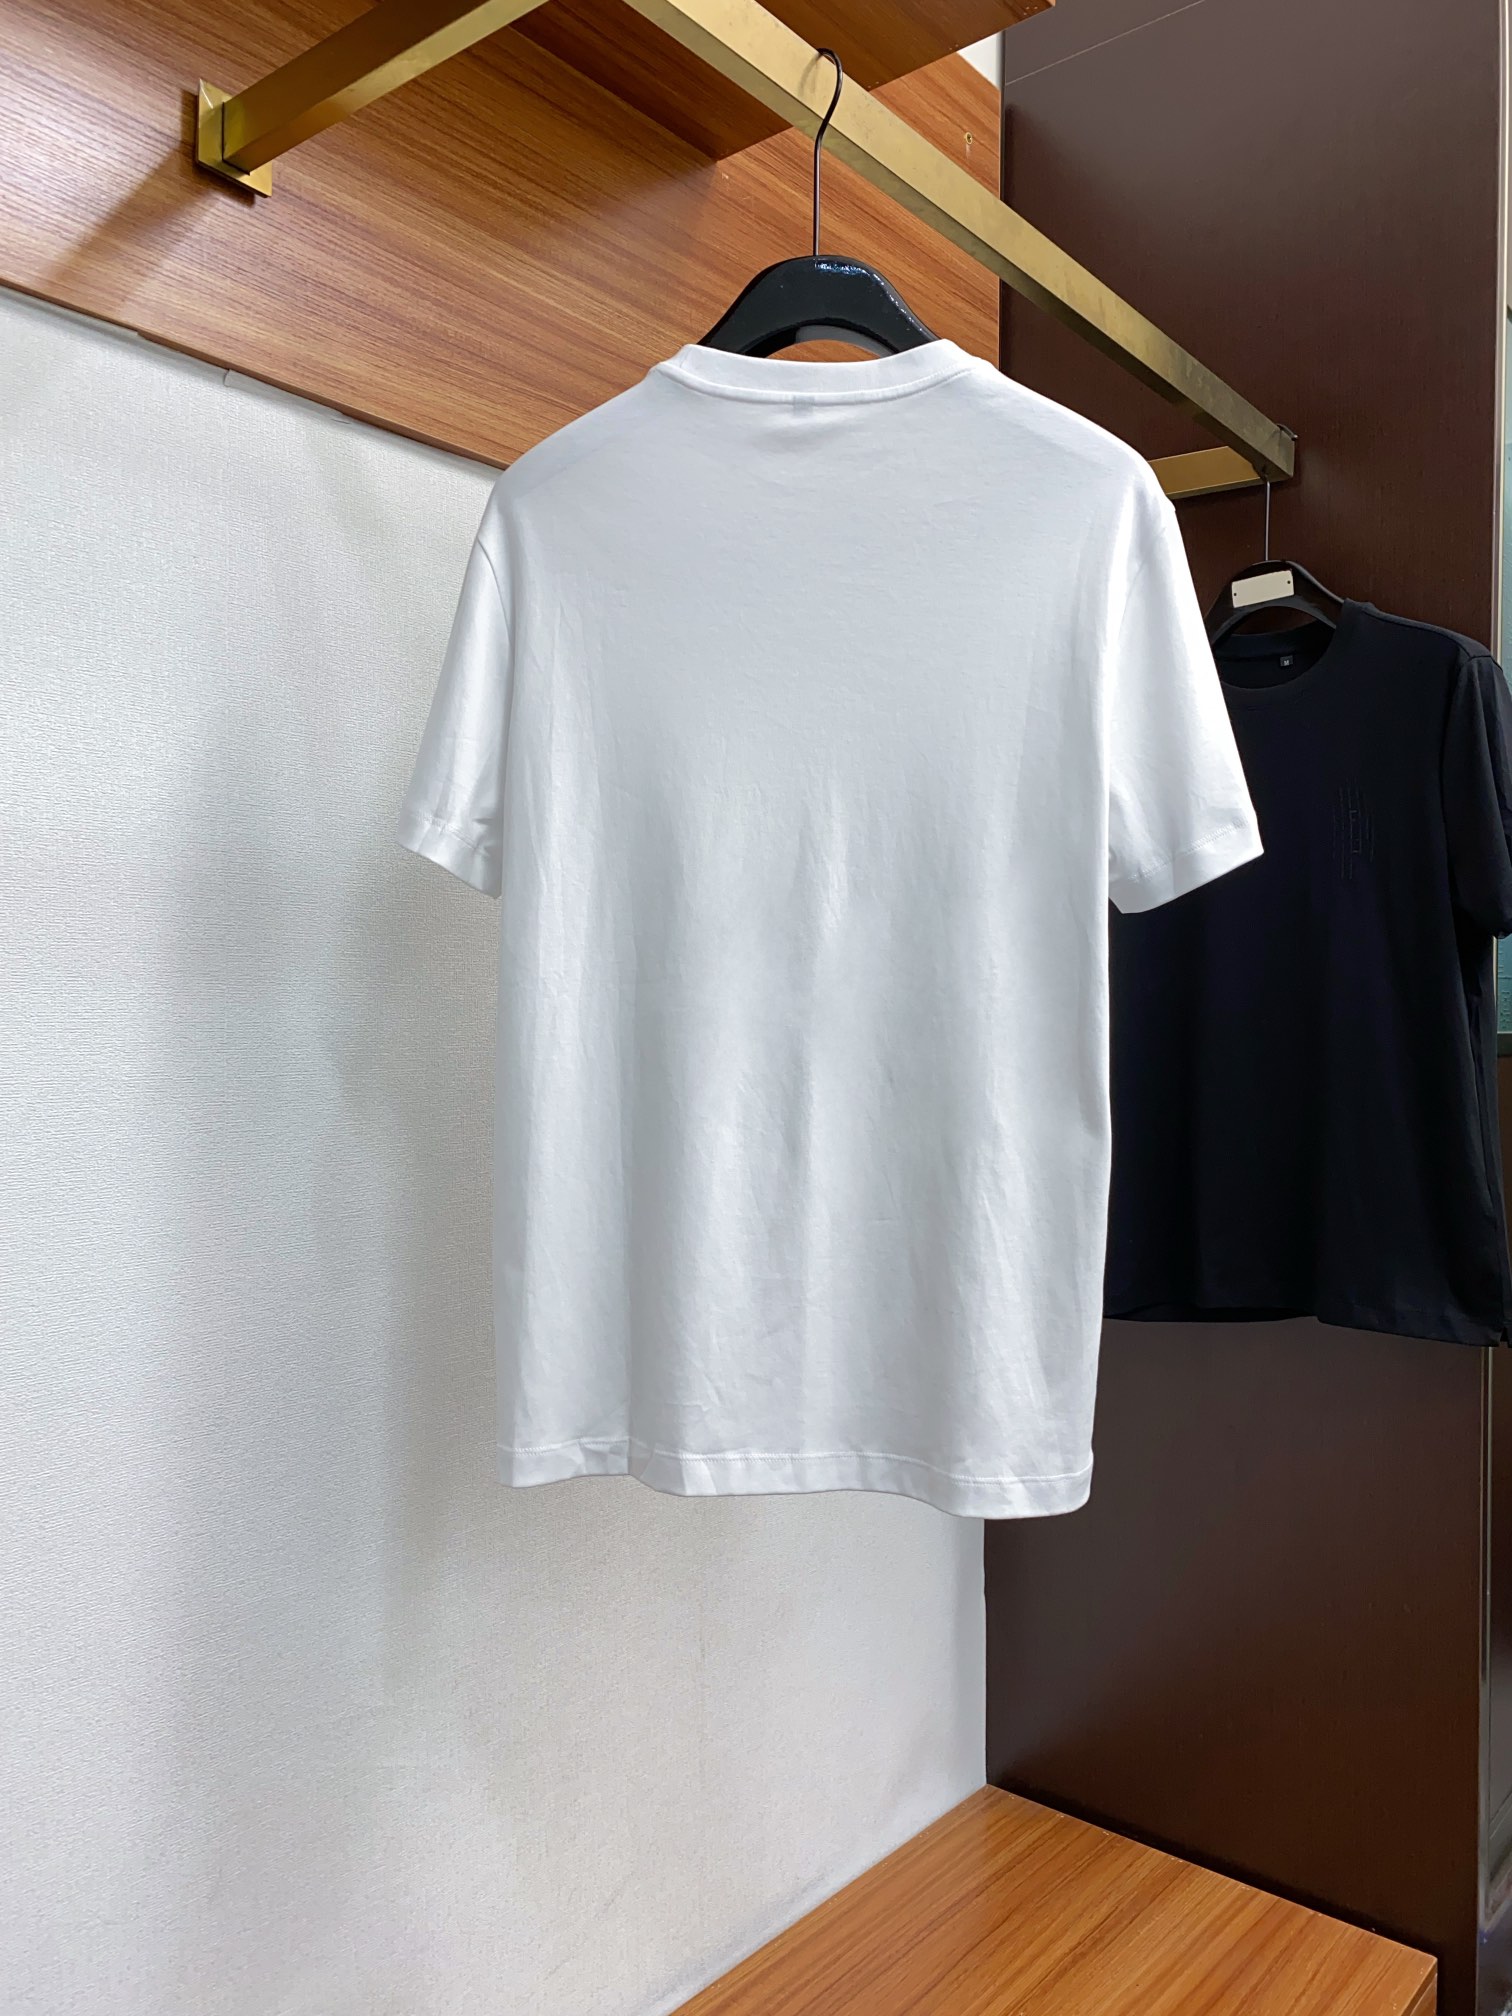 fendi ワイシャツスーパーコピー トップス 綿100% プリント 短袖 ゆったり シンプル 柔らかい メンズ ホワイト_7